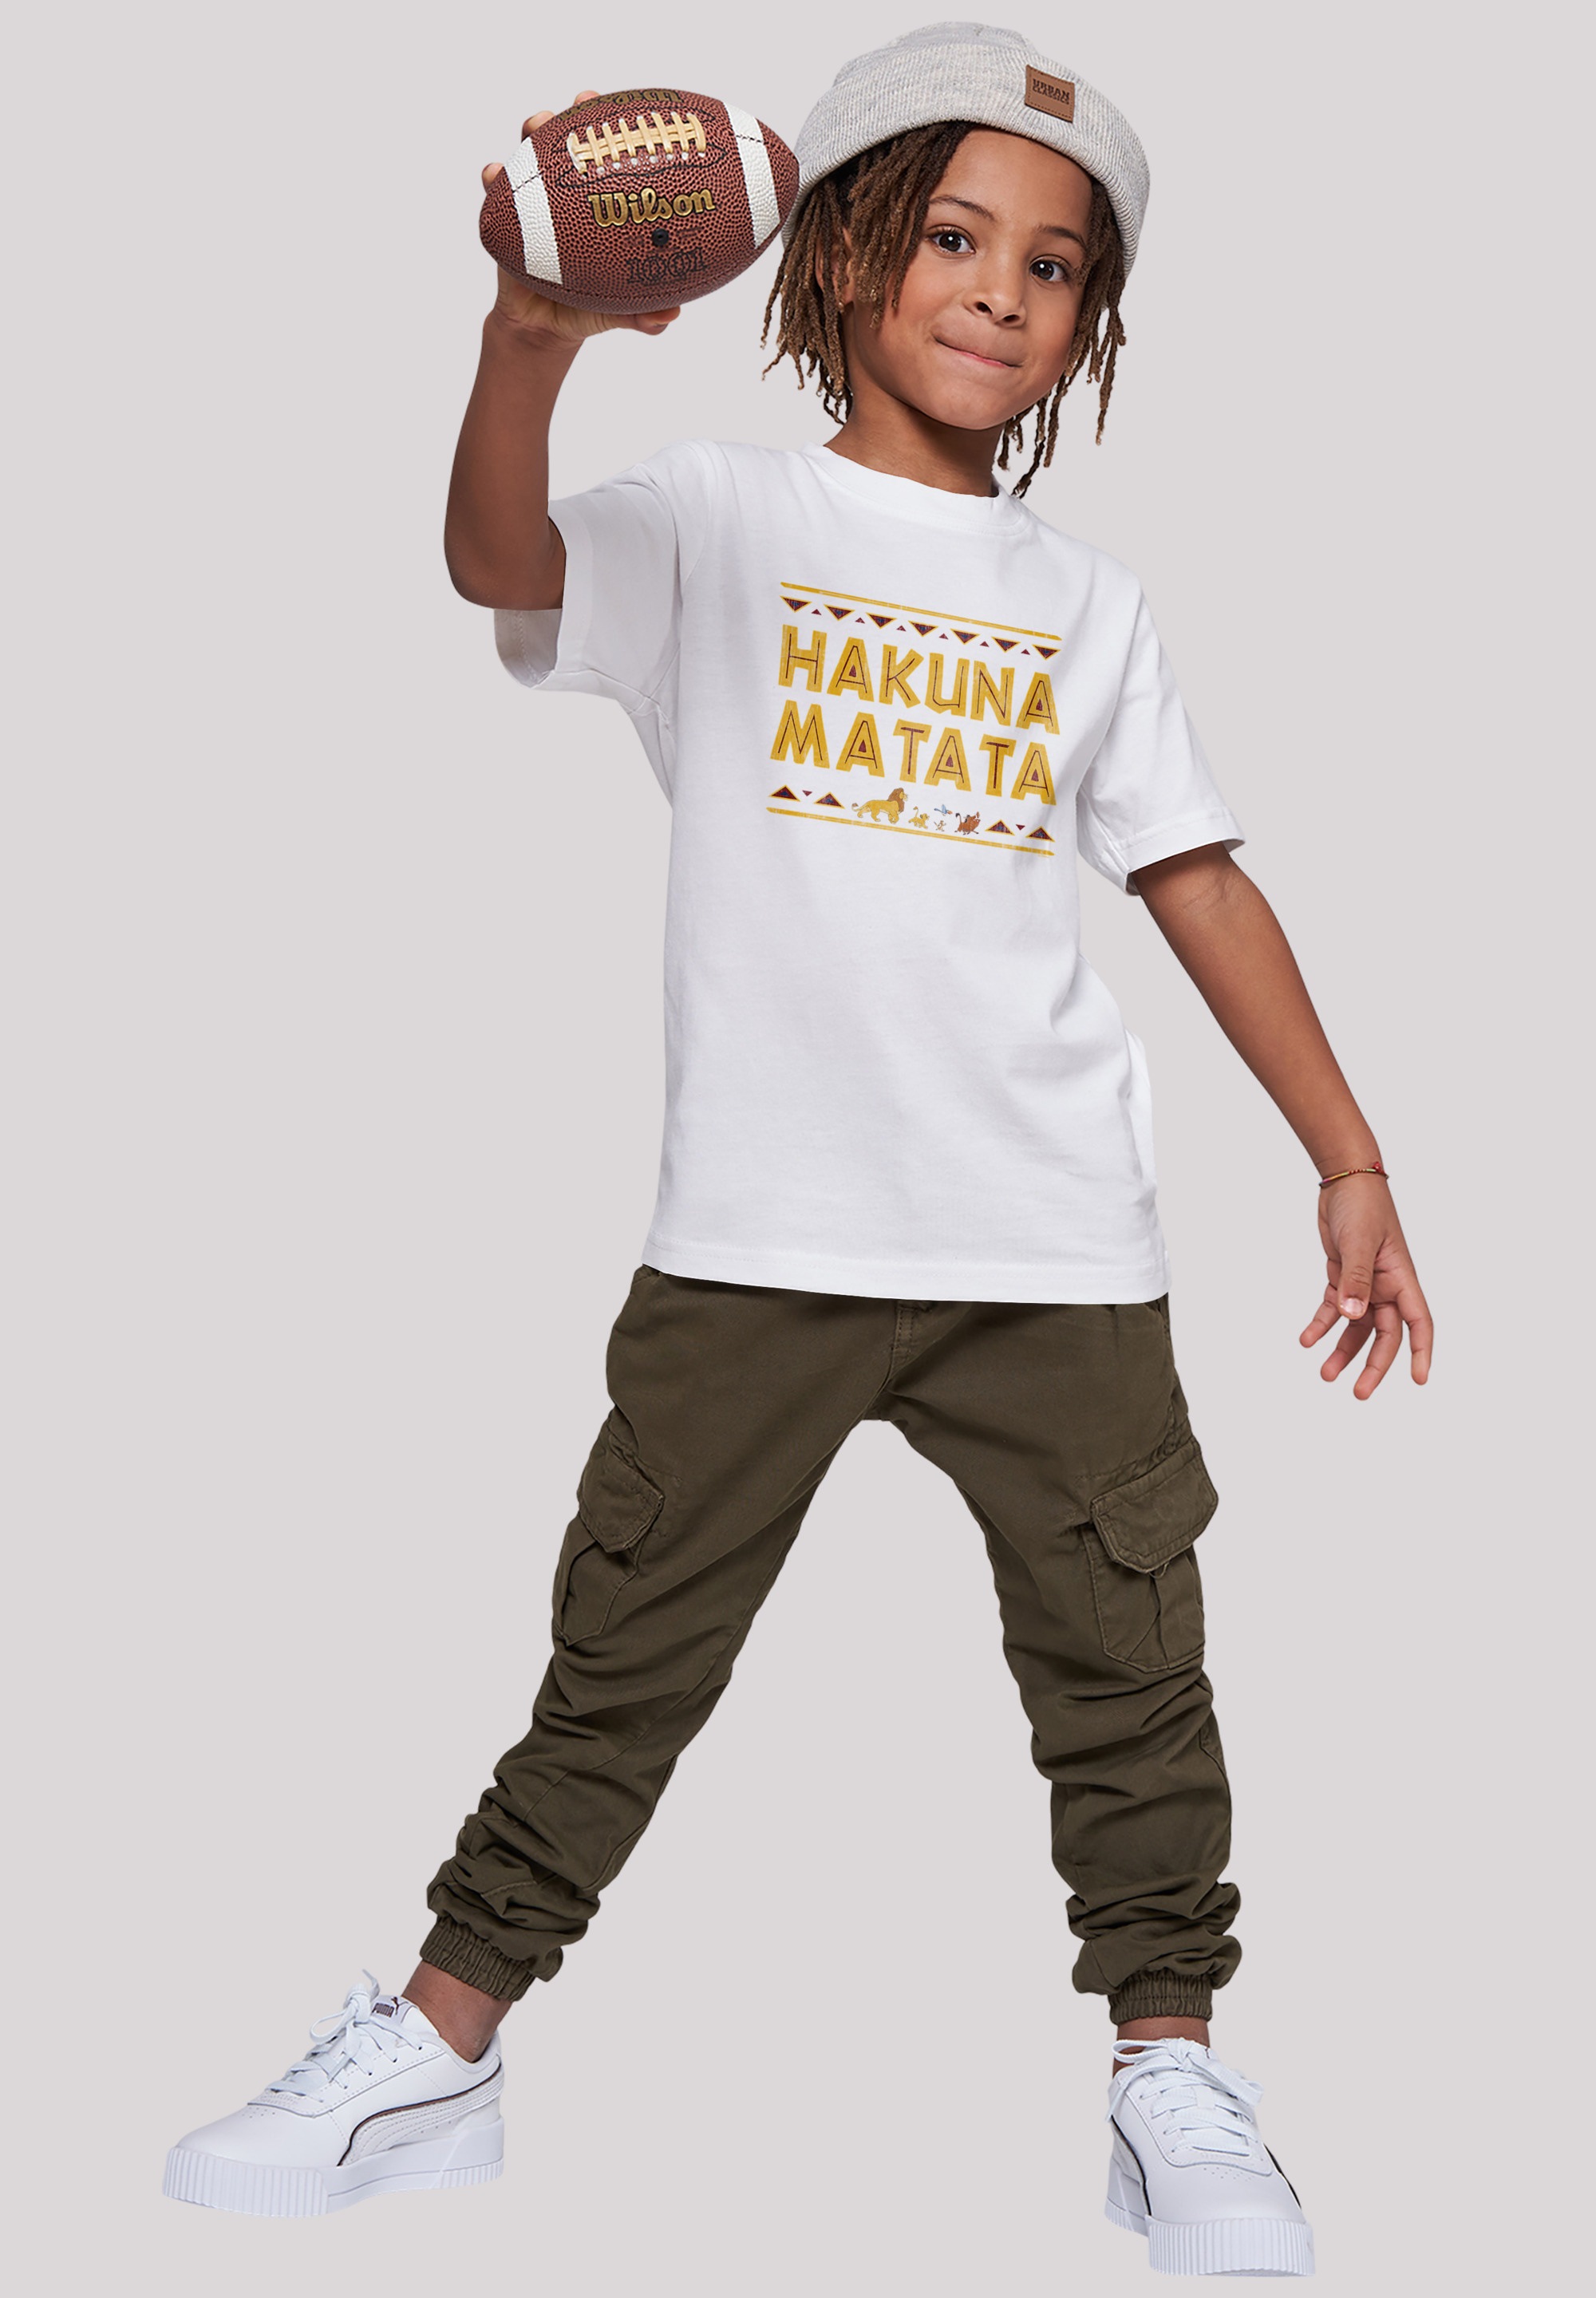 F4NT4STIC T-Shirt kaufen König Merch,Jungen,Mädchen,Bedruckt Kinder,Premium Unisex BAUR Matata«, Hakuna der Löwen »Disney 